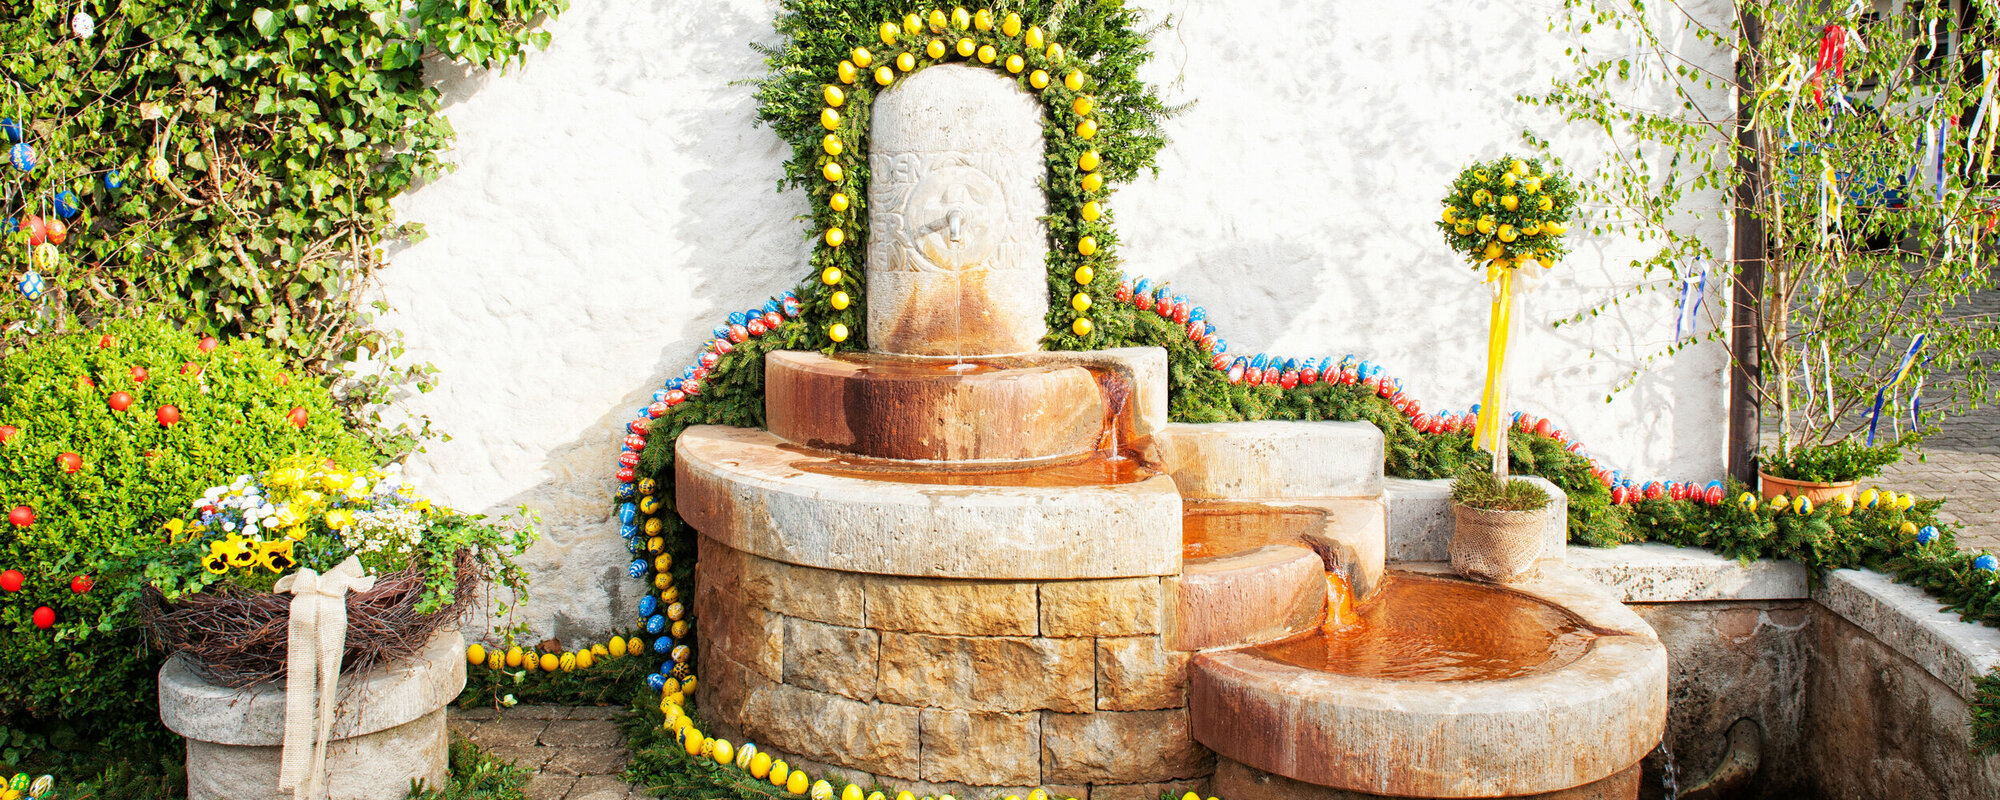 Ein fünfstufiger Brunnen mit kupferfarbenen Becken ist mit gelben, roten und blauen Ostereiern und Nadelzweigen geschmückt.